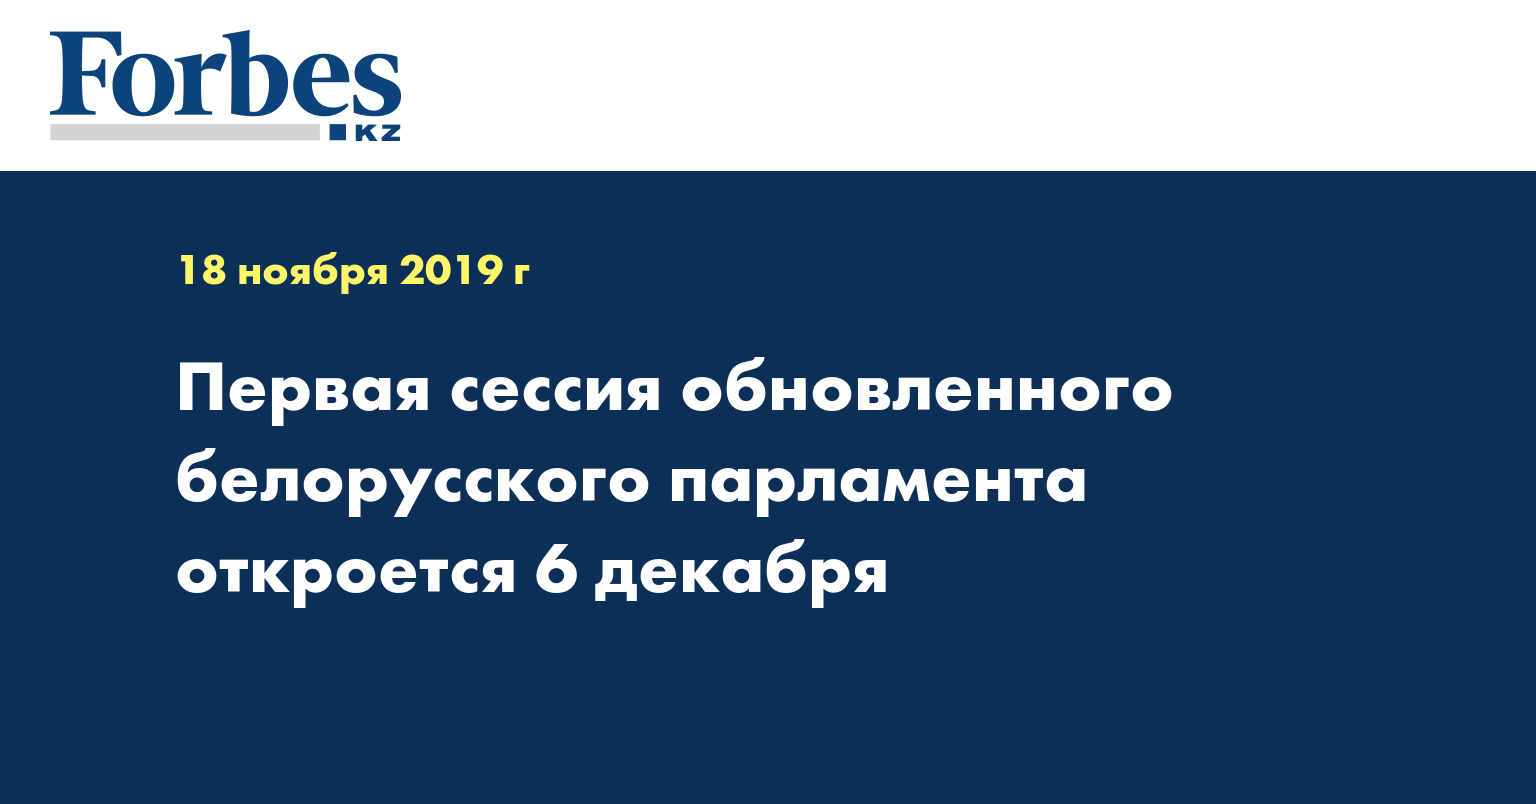 Первая сессия обновленного белорусского парламента откроется 6 декабря